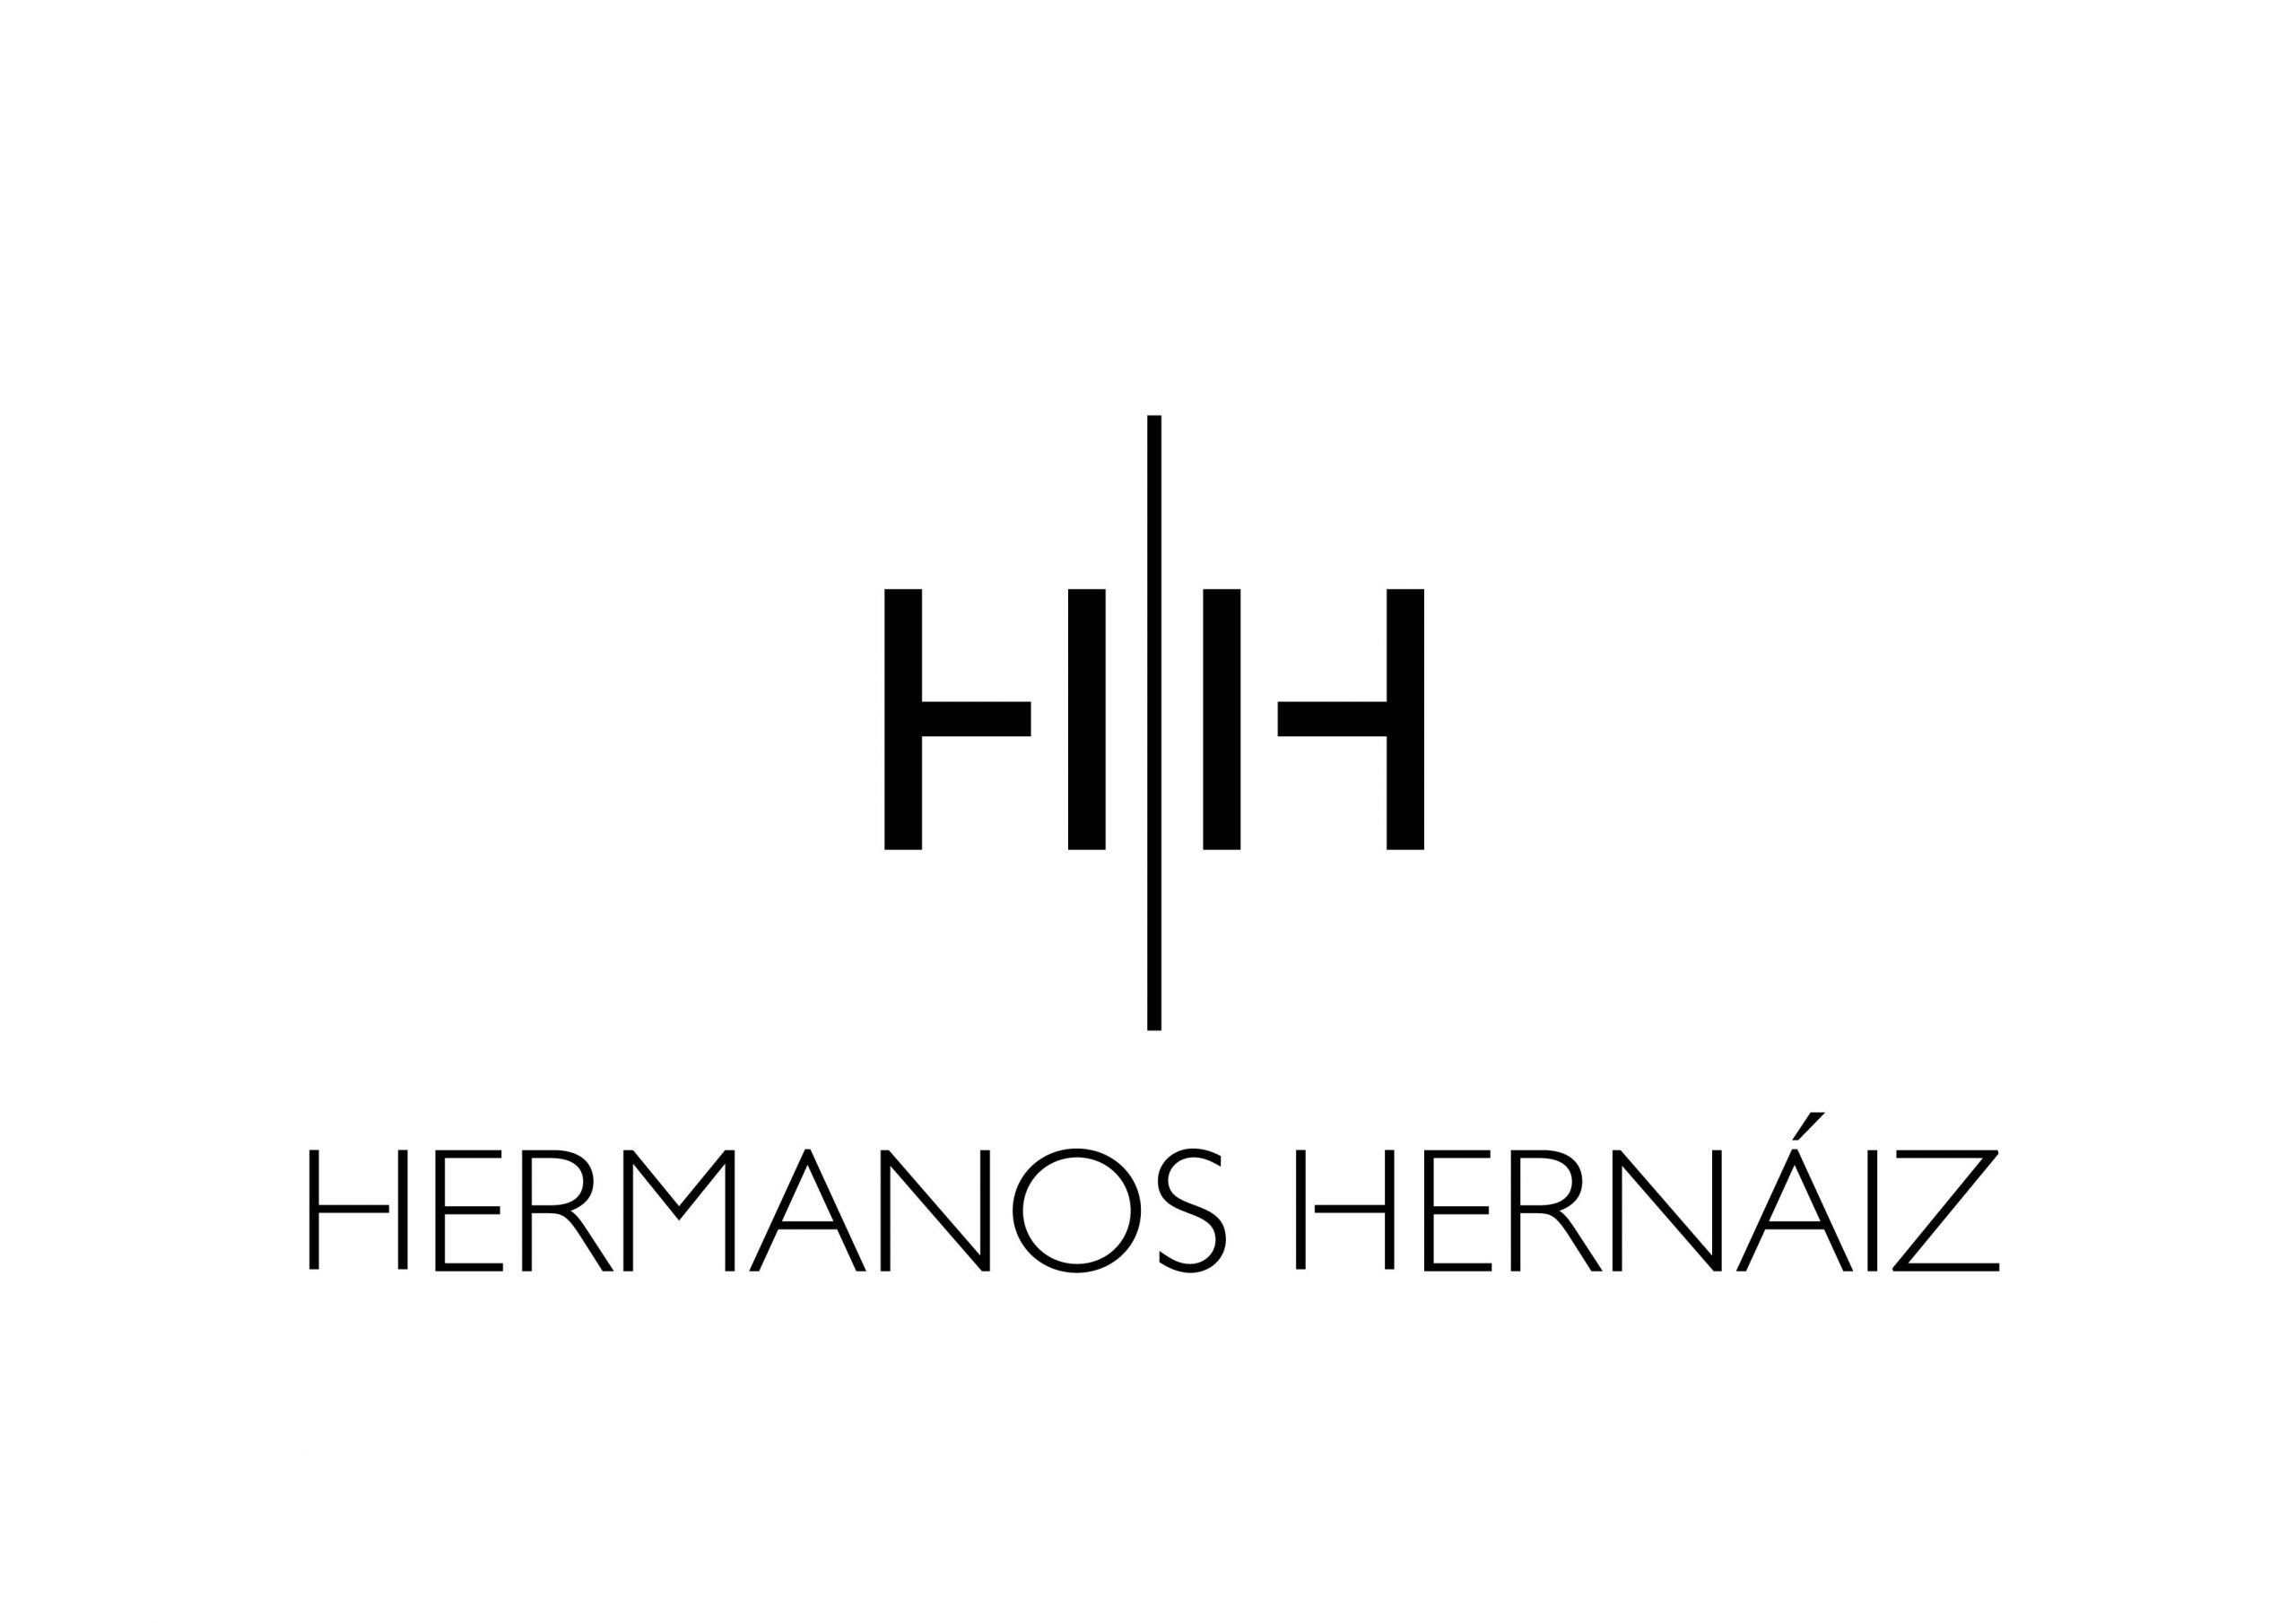 bodega hermanos hernaiz logo